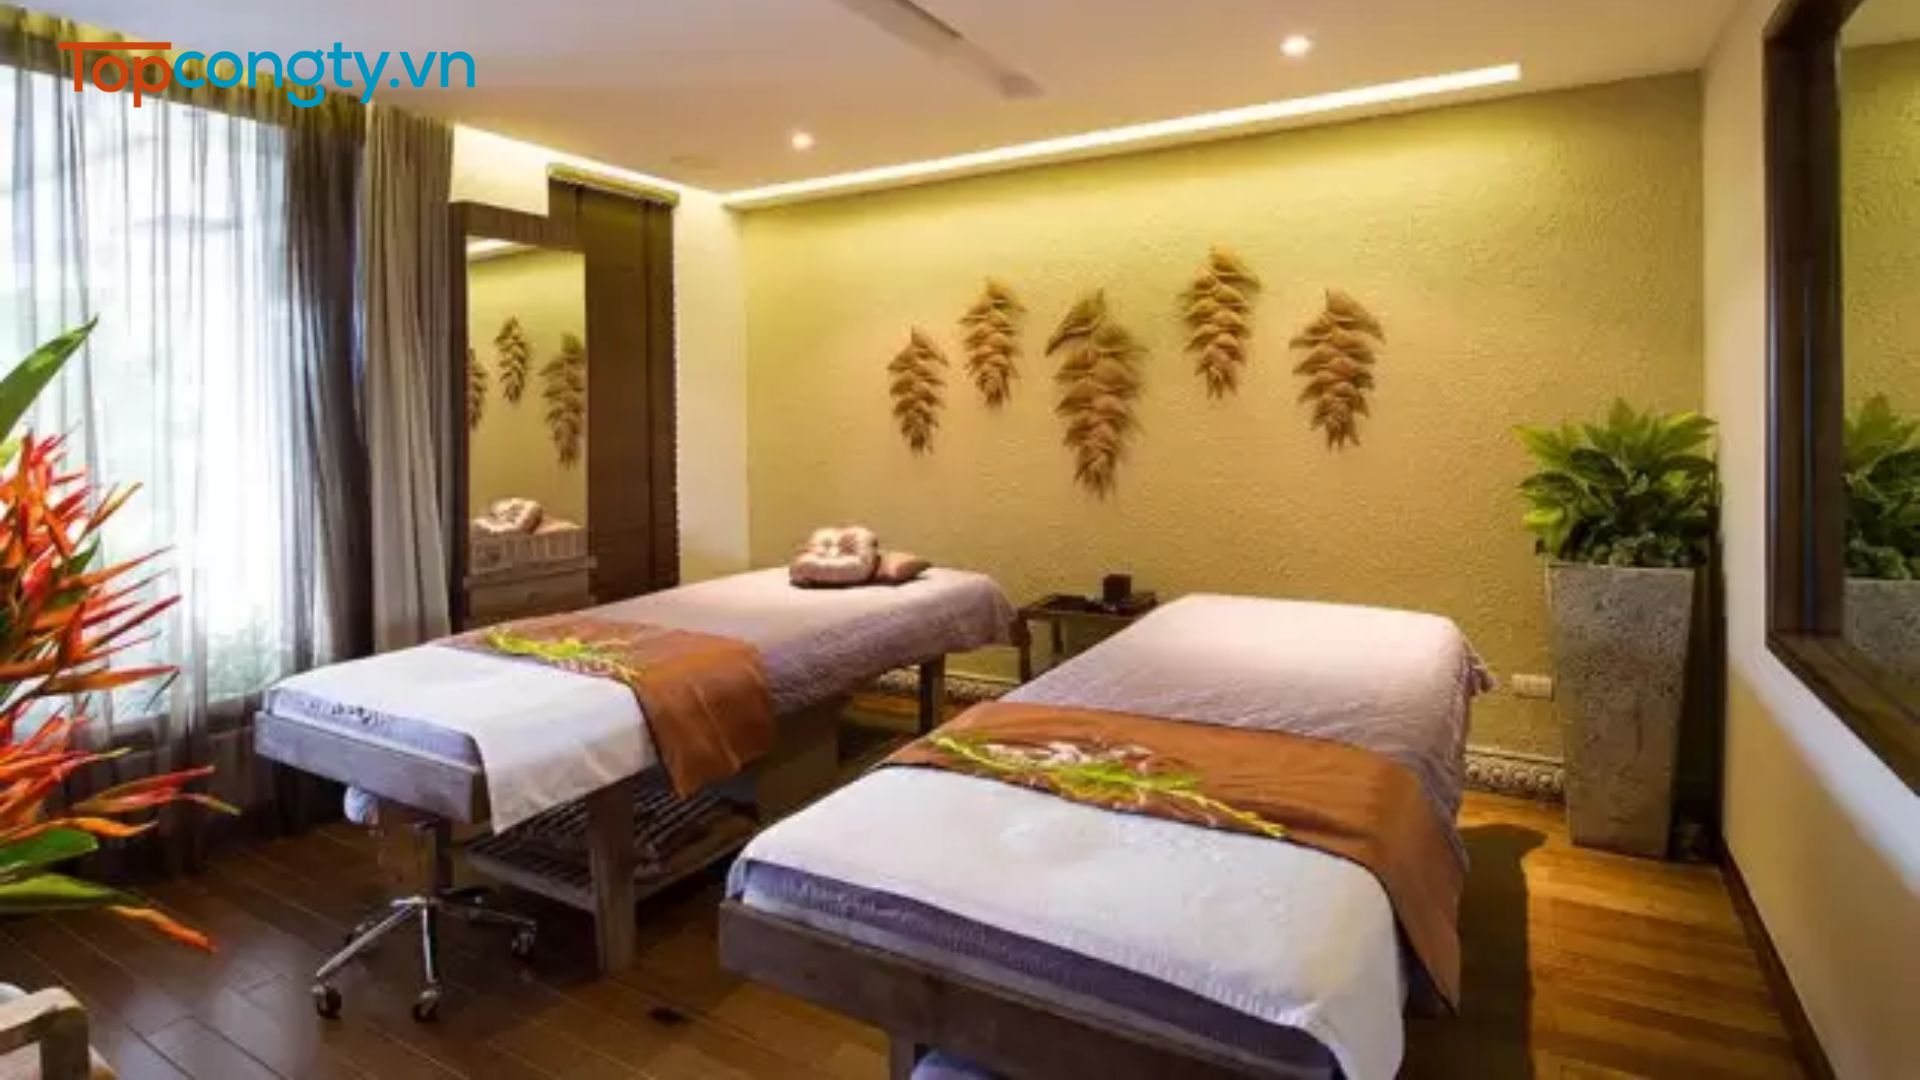 Amadora Wellness & Spa - Spa massage Hà Nội uy tín giá tốt tại Hà Nội